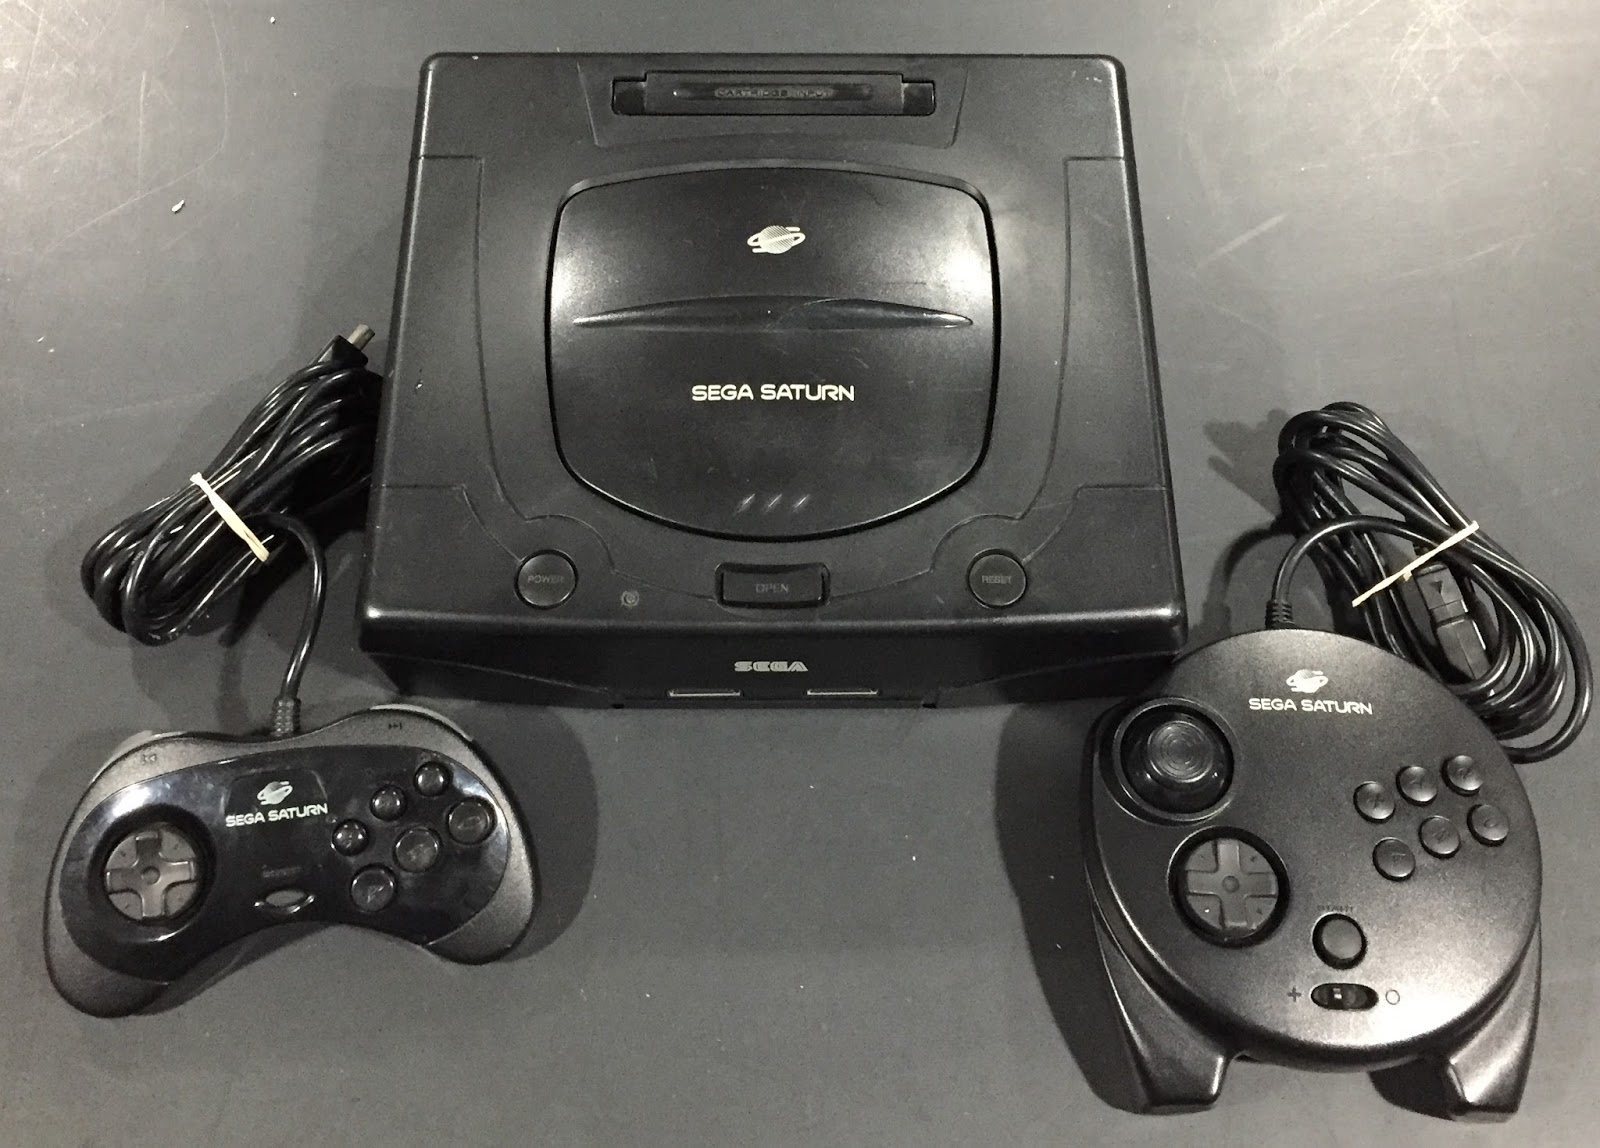 video game consoles -- Sega Saturn video game console